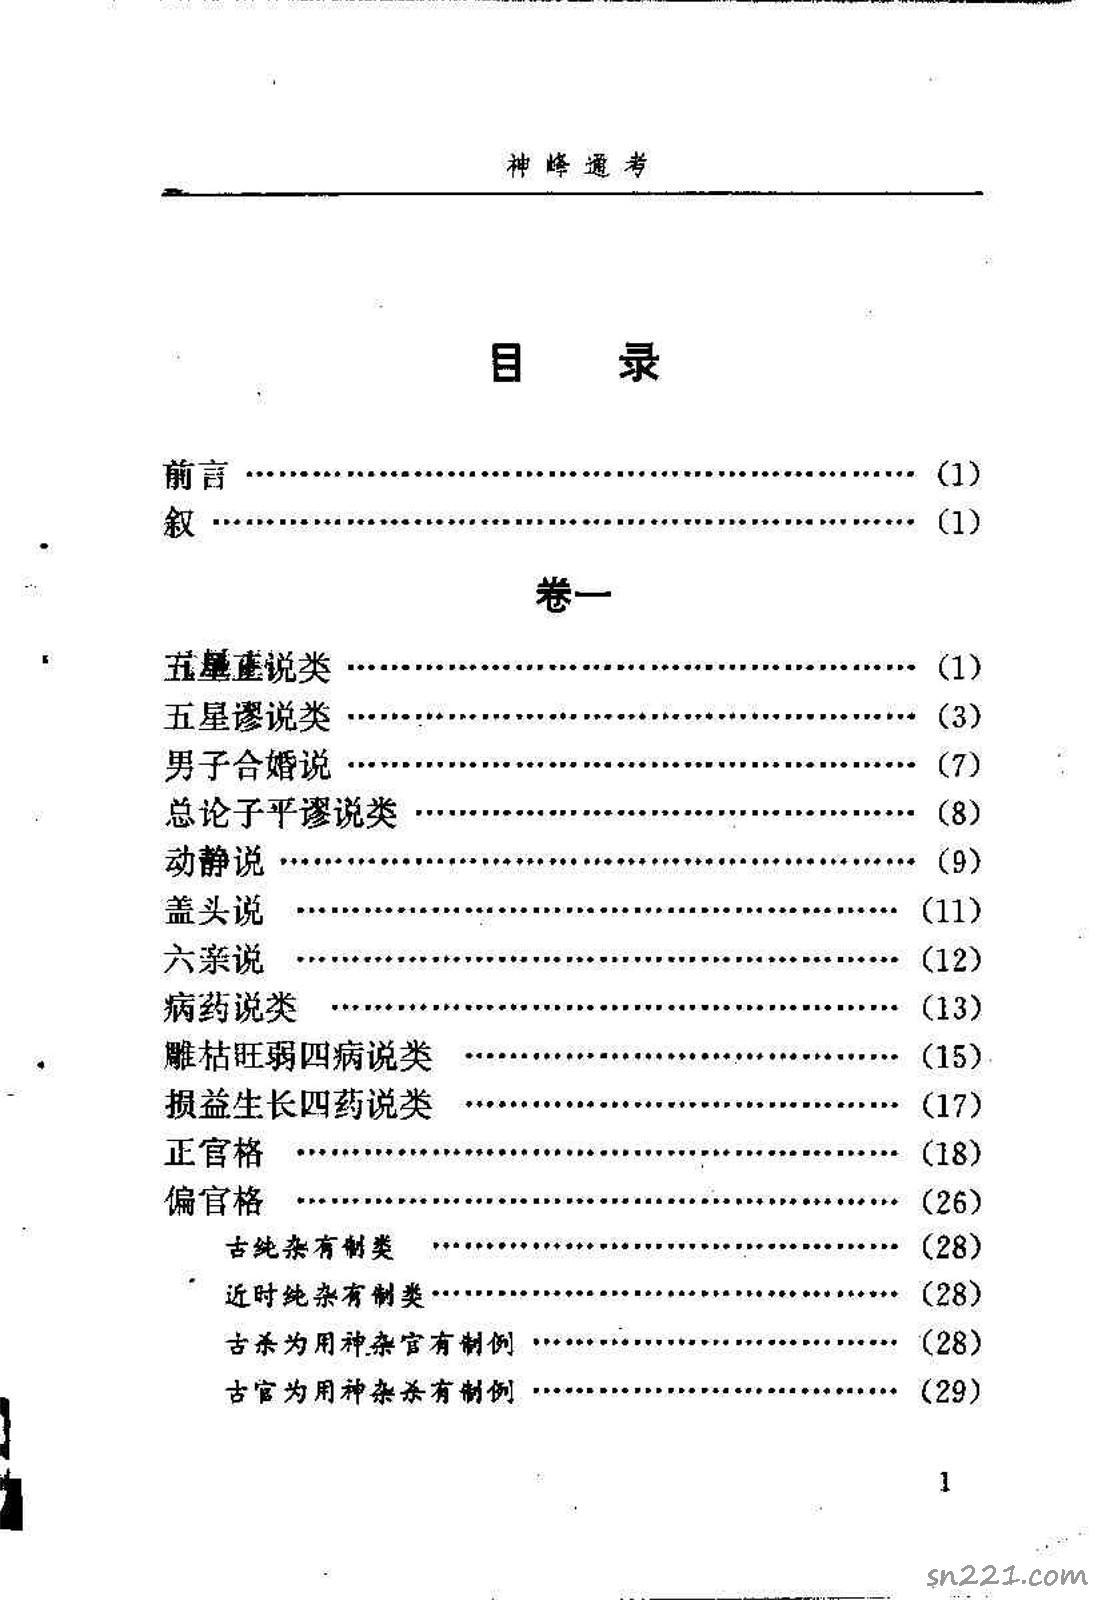 邵偉華點校–神峰通考 397頁.pdf